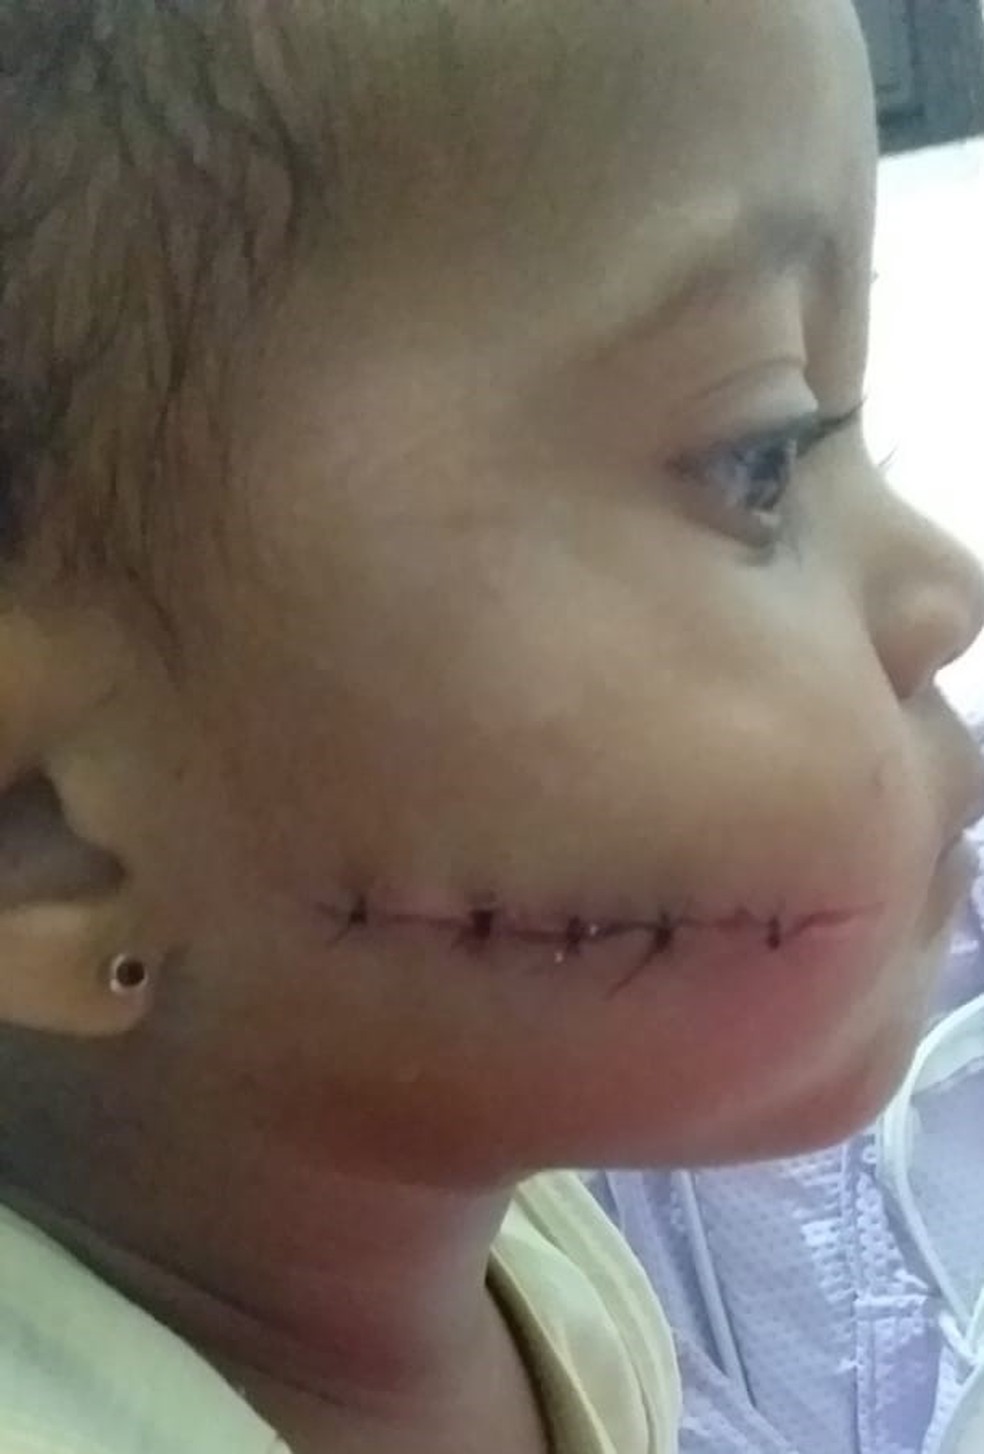 Criança de 1 ano e 6 meses fica ferida na bochecha por linha com cerol em Iguaba Grande, no RJ — Foto: Arquivo pessoal